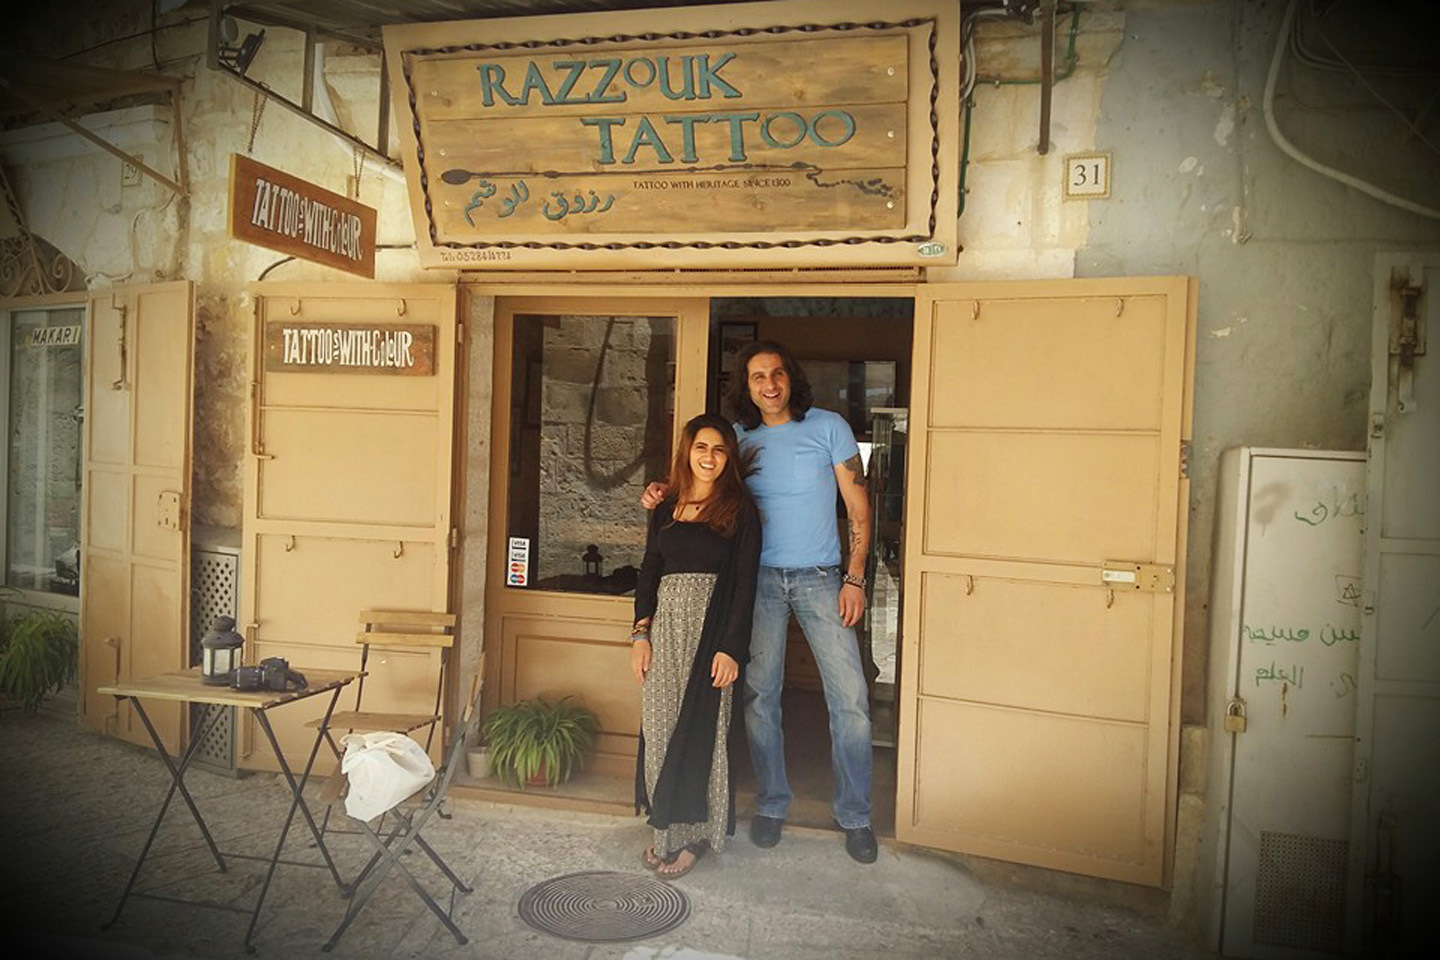 Attraversando la Porta di Jaffa, passando per la piazza principale sempre gremita, si trova il negozio di tatuaggi della famiglia Razzouk, una famiglia copta egiziana.